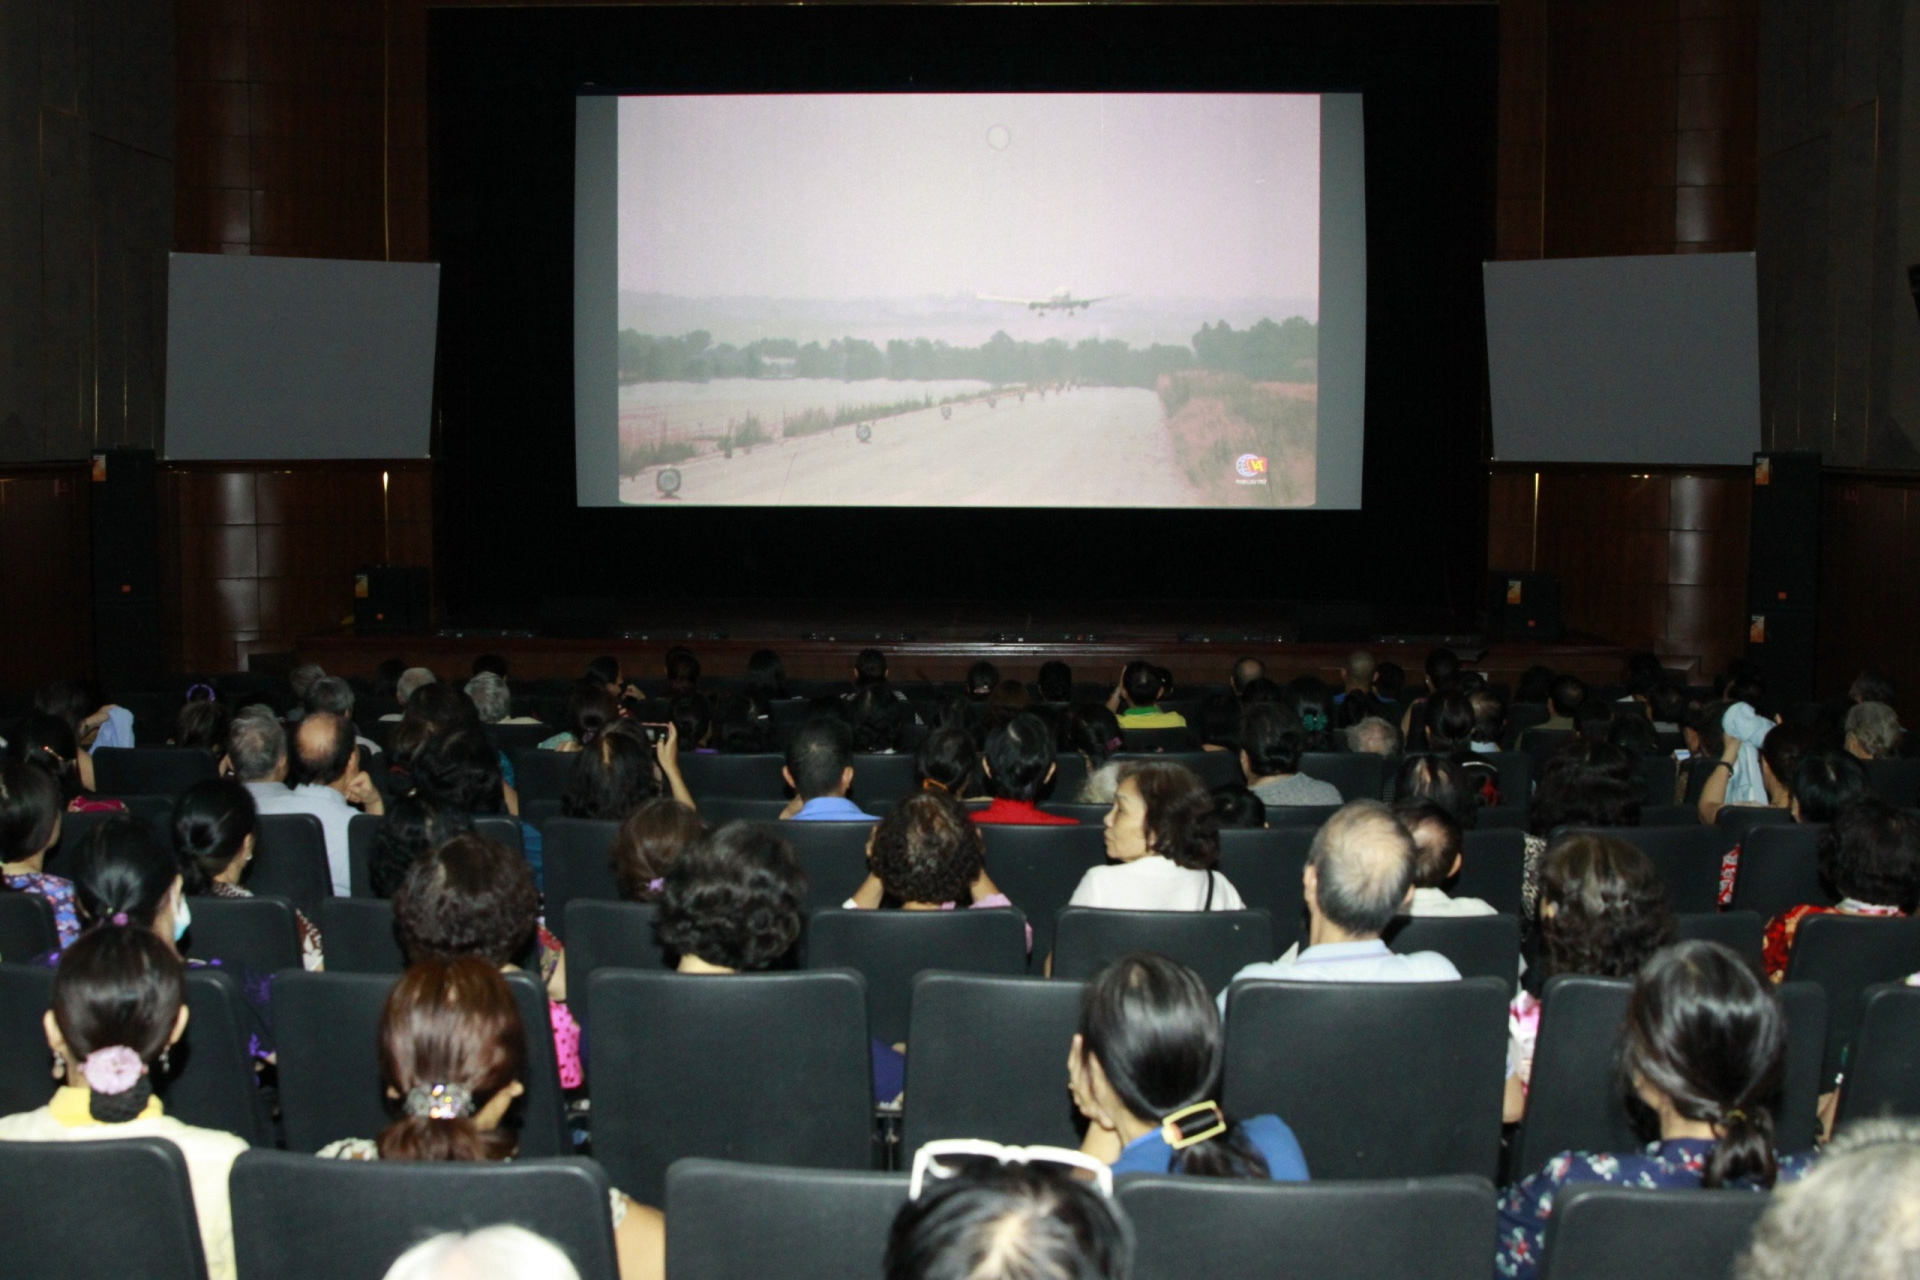 Chương trình Điện ảnh: "Những ngày phim Việt Nam Kỷ niệm 70 năm Chiến thắng Điện Biên Phủ" (7/5/1954 - 7/5/2024)